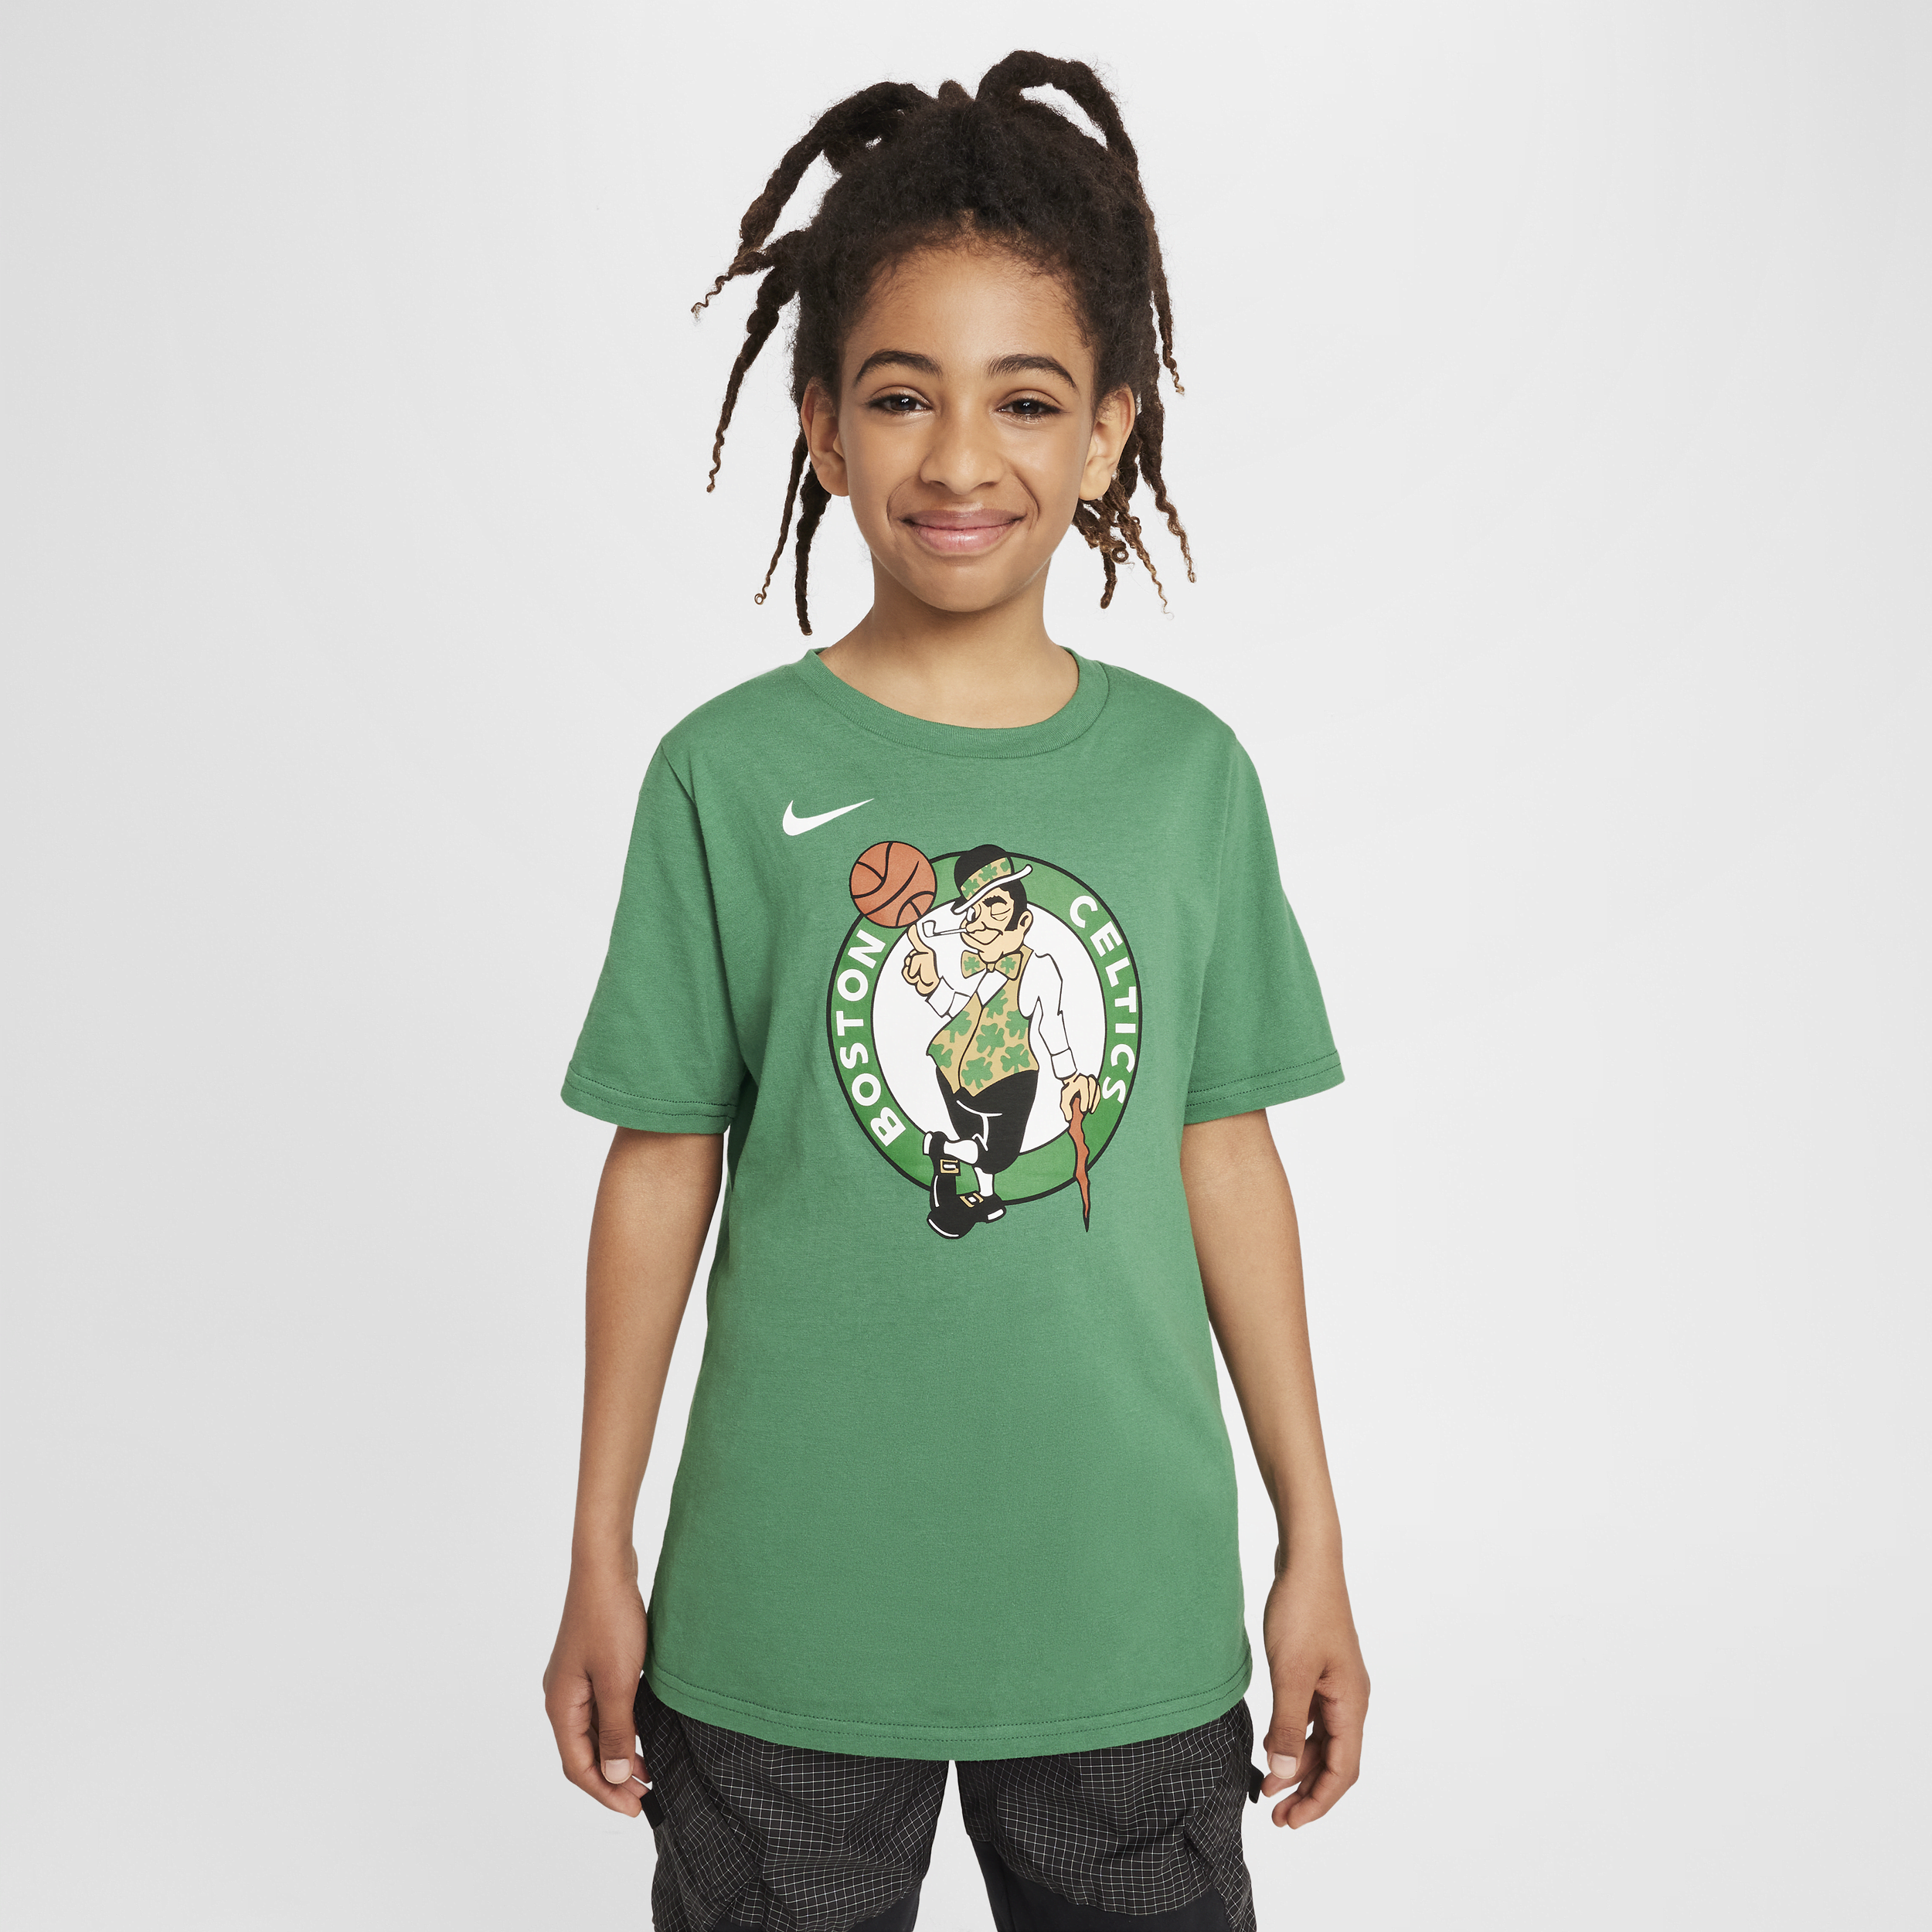 Boston Celtics Essential Nike NBA-shirt met logo voor jongens - Groen